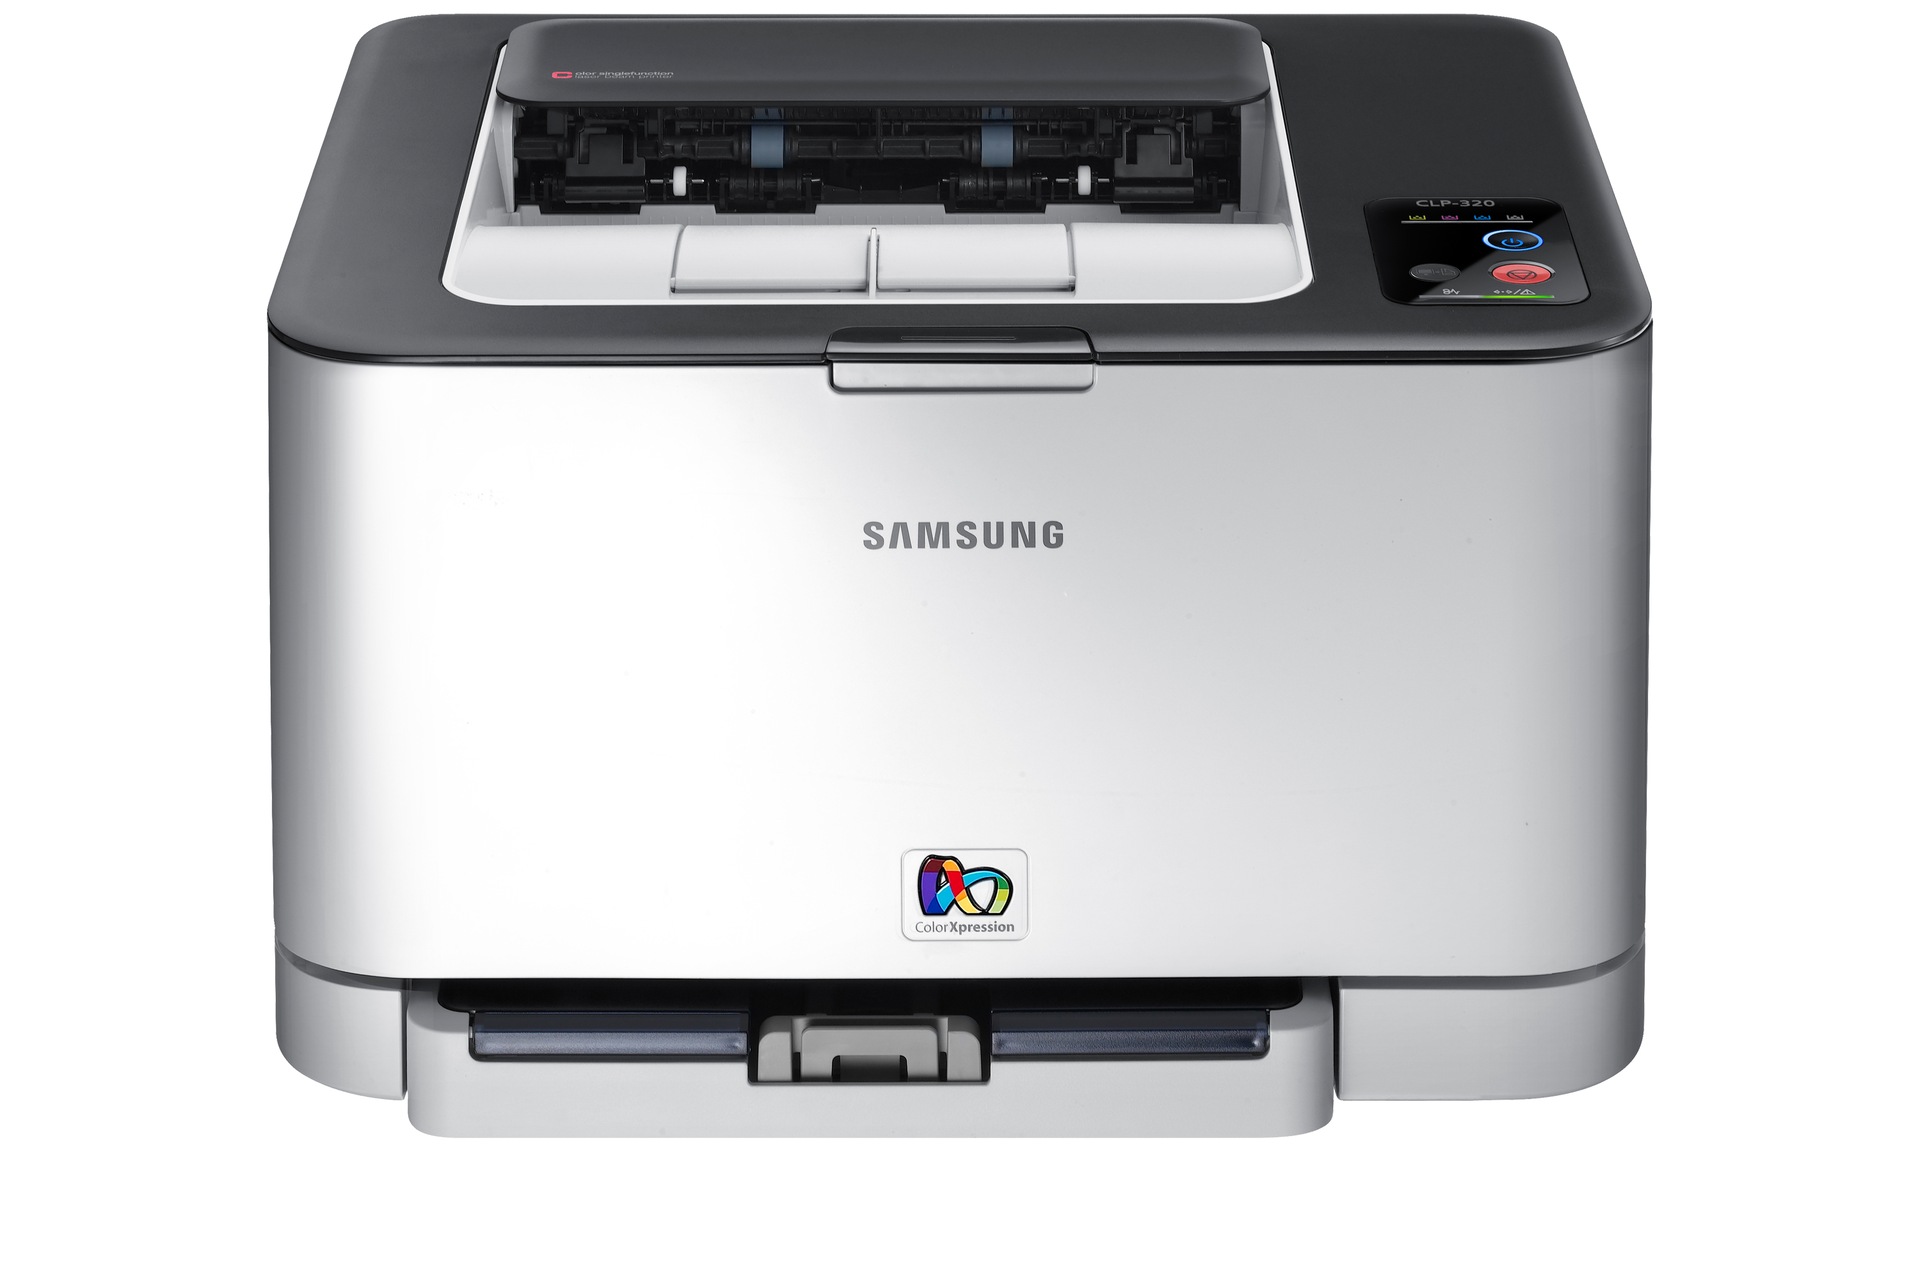 Samsung Laser Printer  on Clp 320n Colour Laser Printer   Samsung Uk   Overview